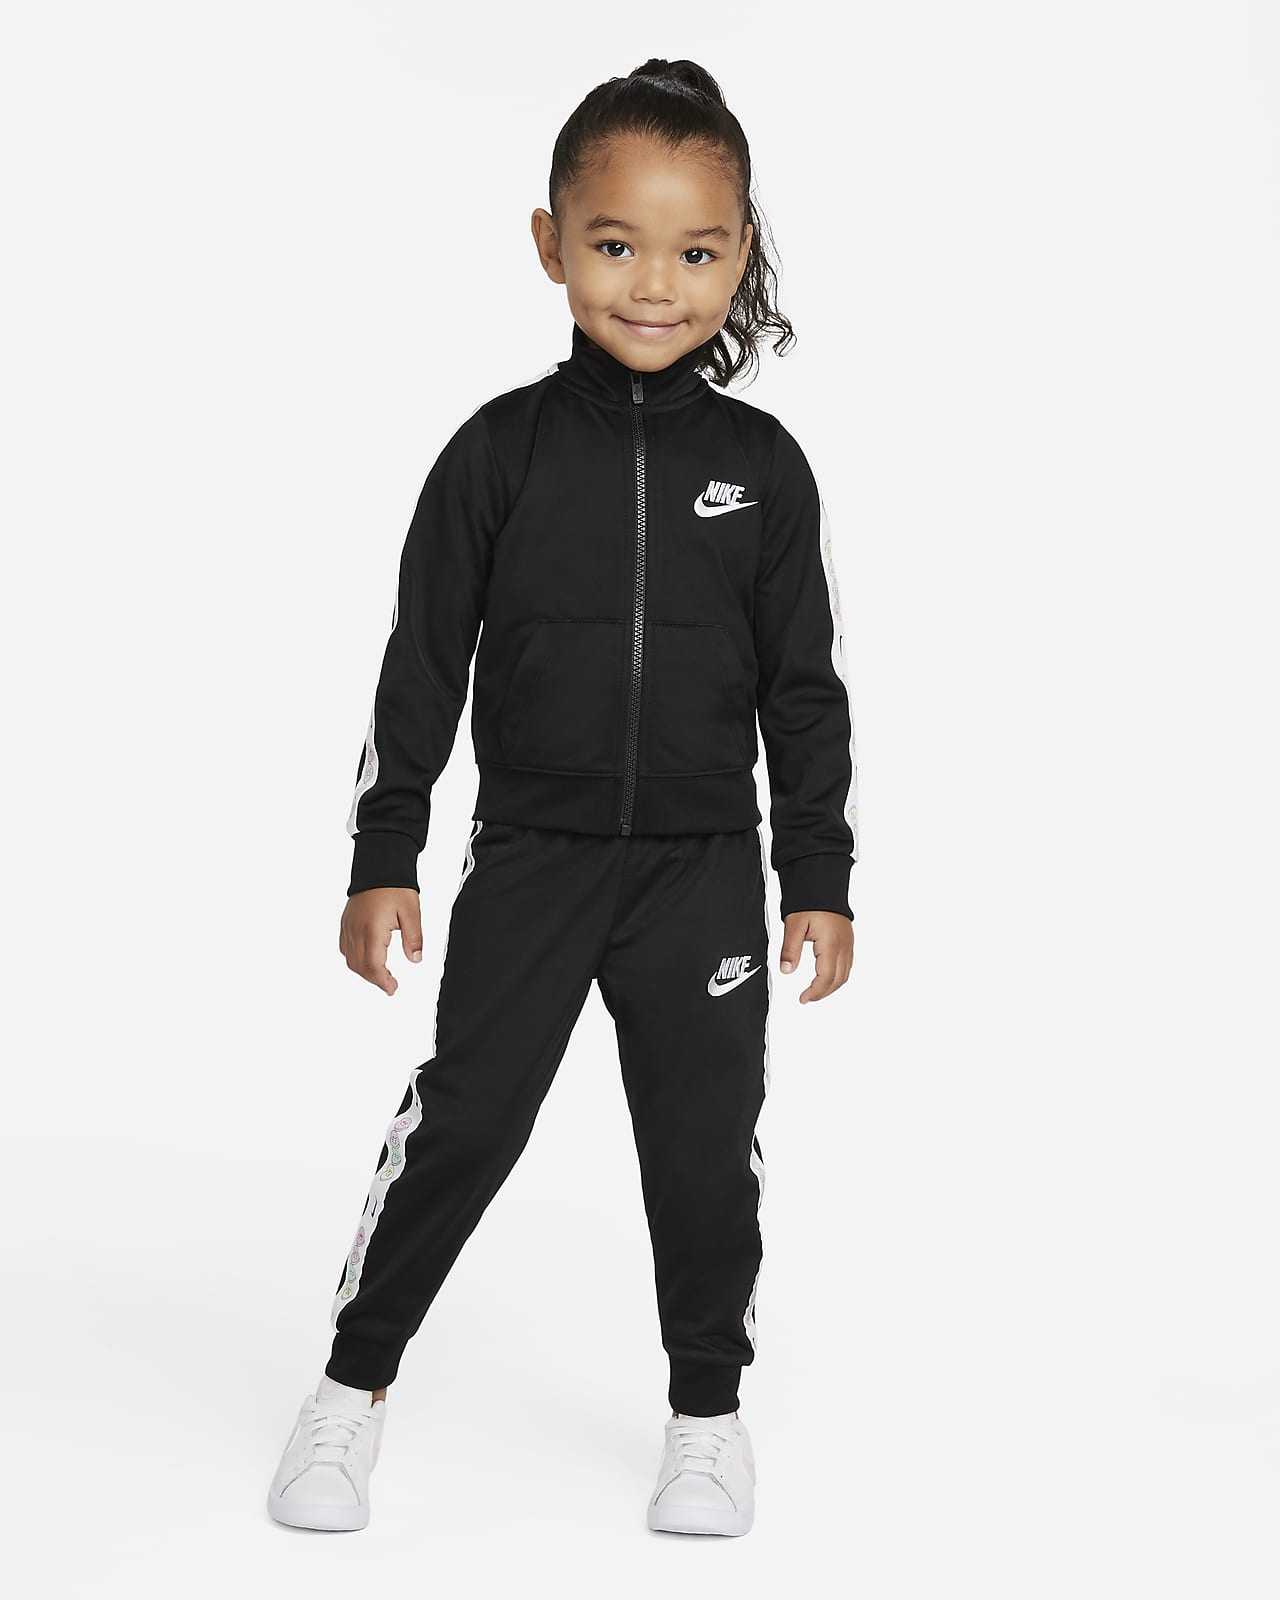 Nike-tracksuitsæt til småbørn